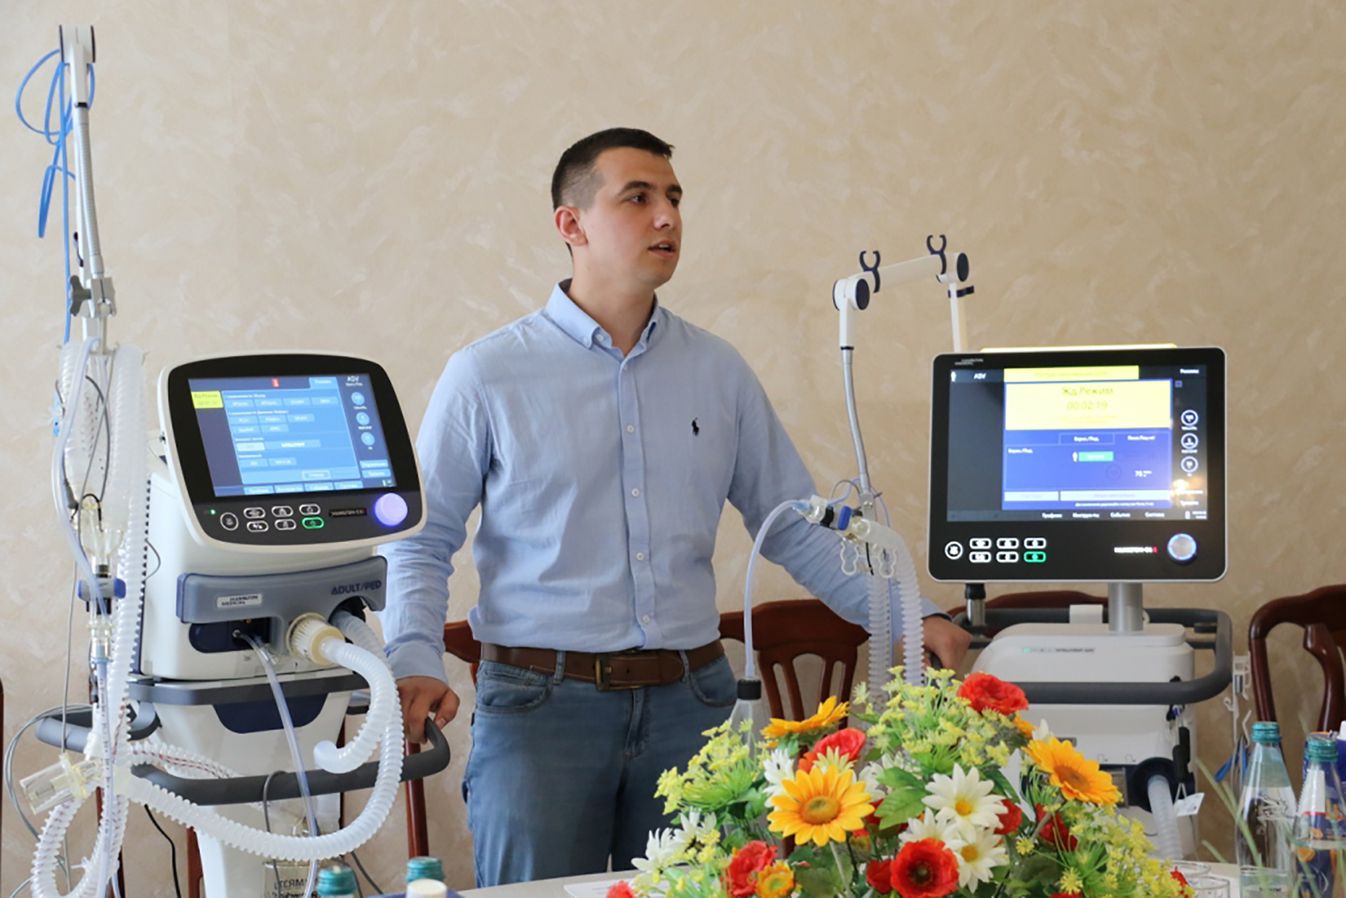 Житомир: Апарати ШВЛ максимально підлаштовуються під потреби хворих